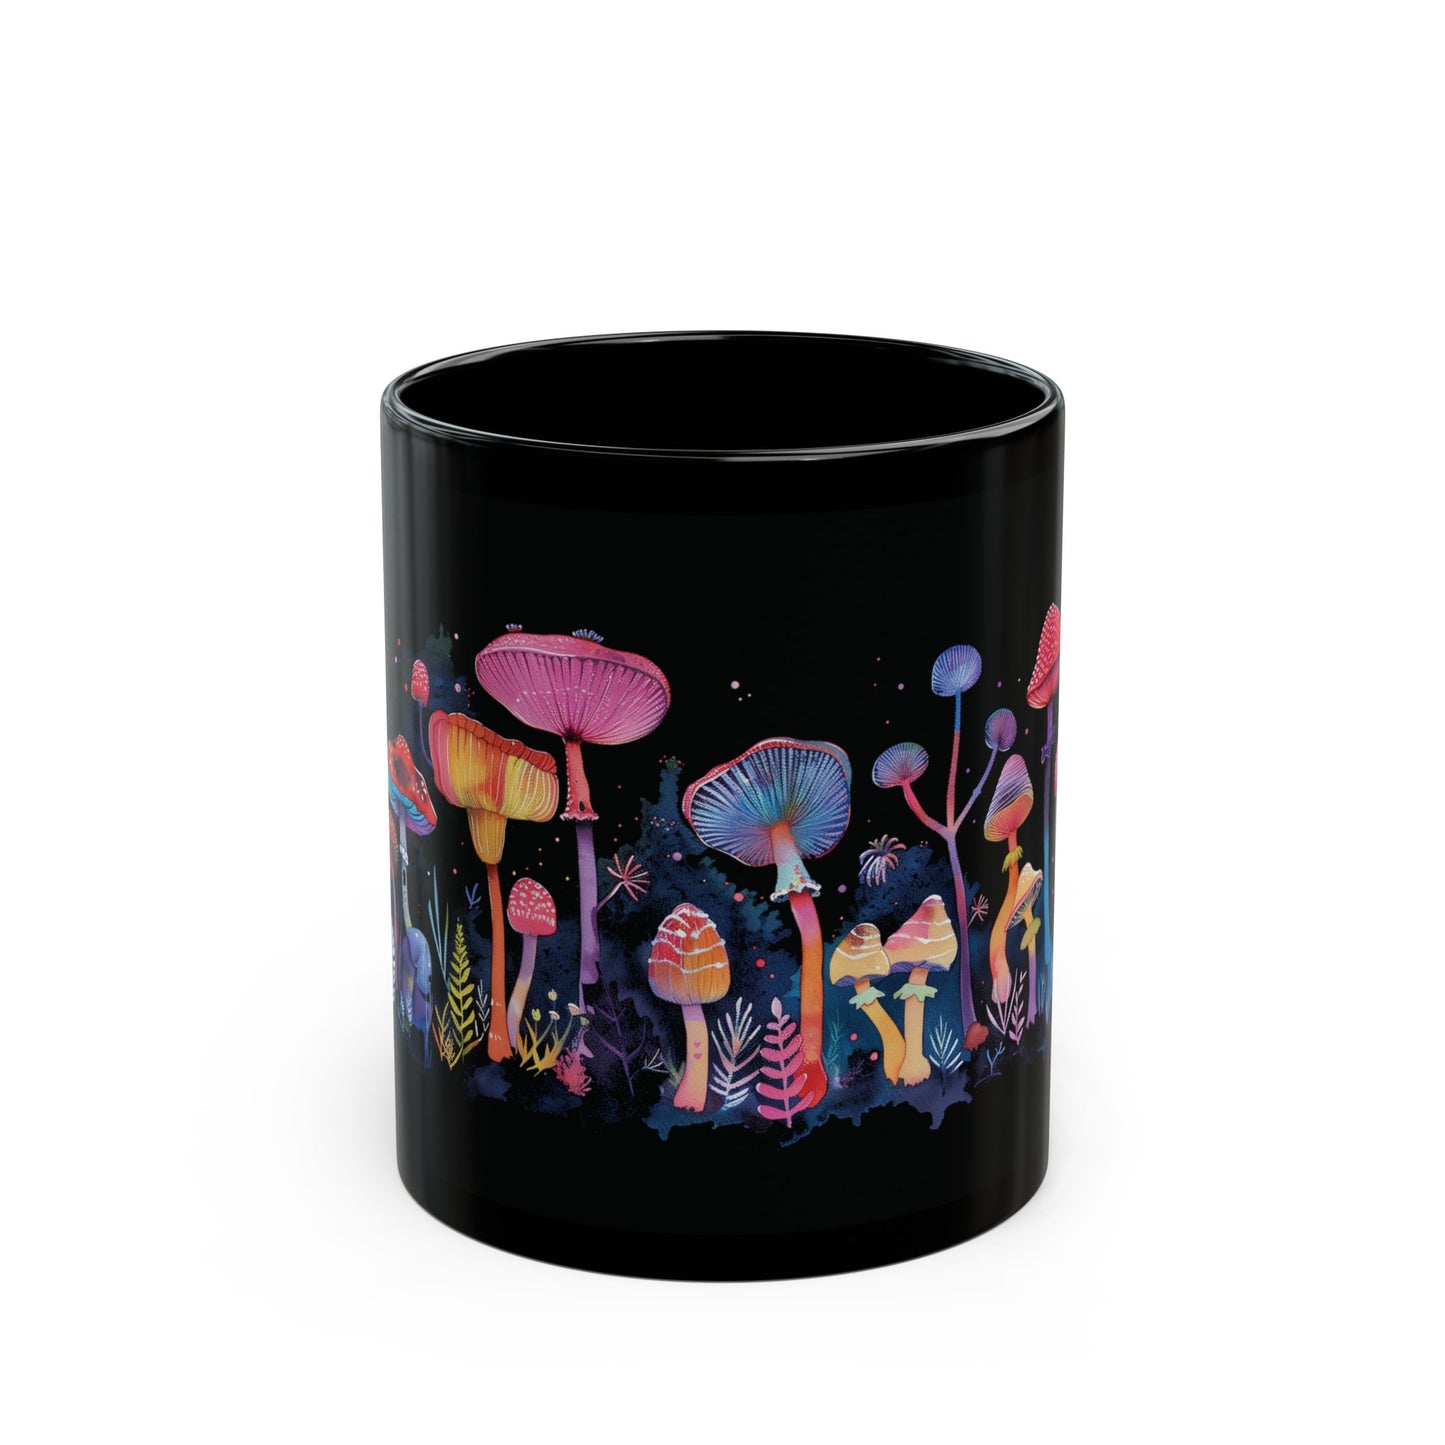 Mushroom Mug, Neon Mushroom Mug, Home Decor Mug, Tea Cup, Mushroom Cottagecore Mug, Coffee Mug, Colorful Mushroom Mug, Black Mushroom Mug